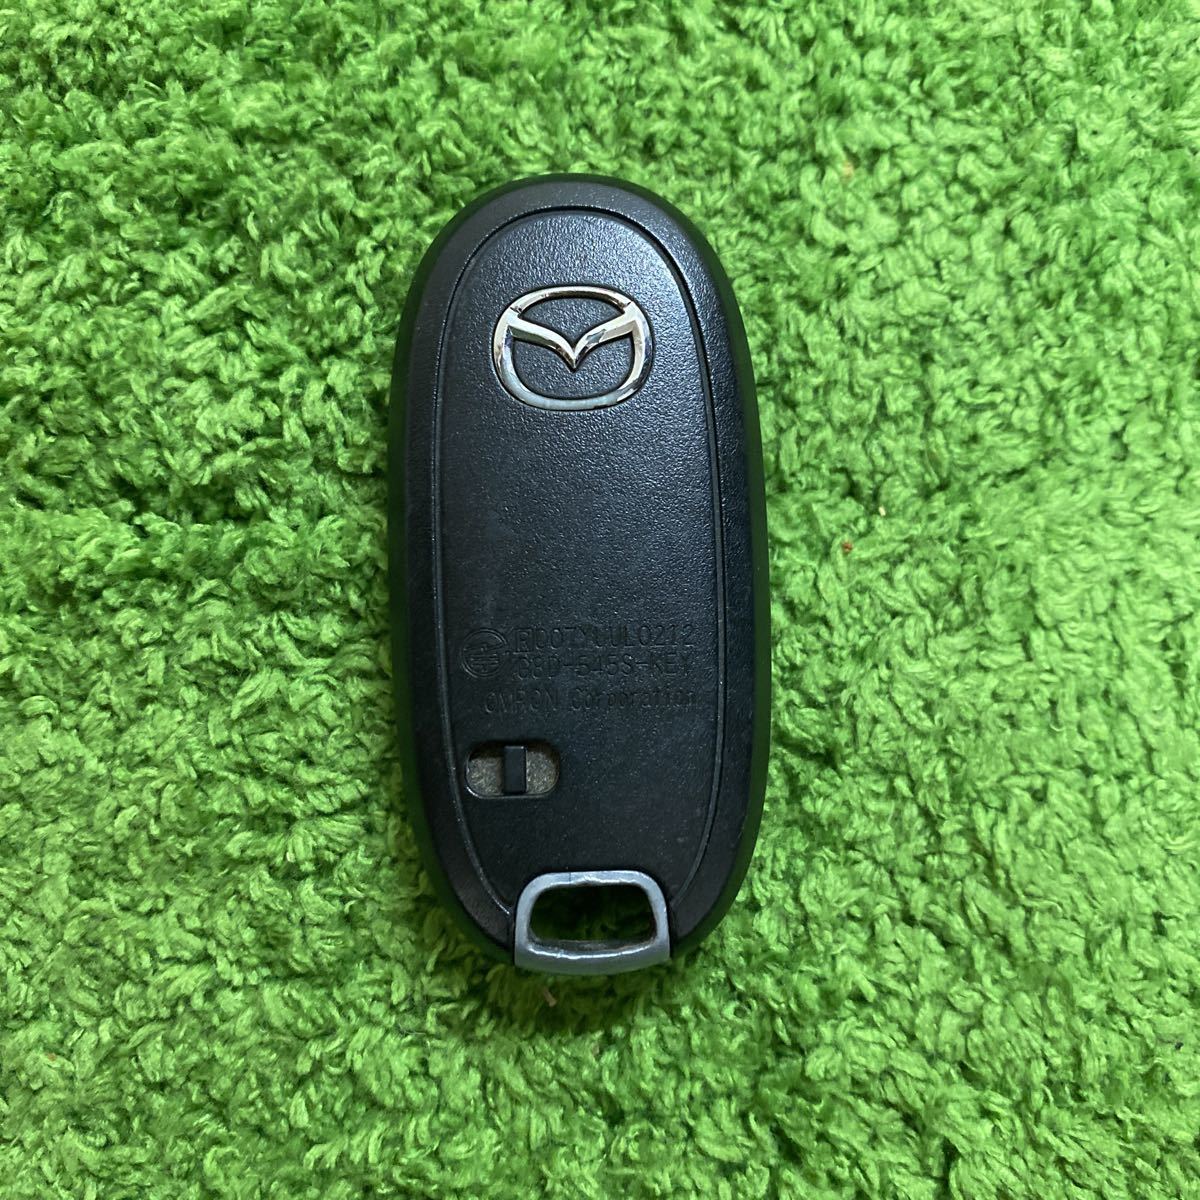  Mazda оригинальный "умный" ключ 2 кнопка печать 007YUUL0212 G8D-545S-KEY AZ Wagon дистанционный ключ работа проверка завершено *889